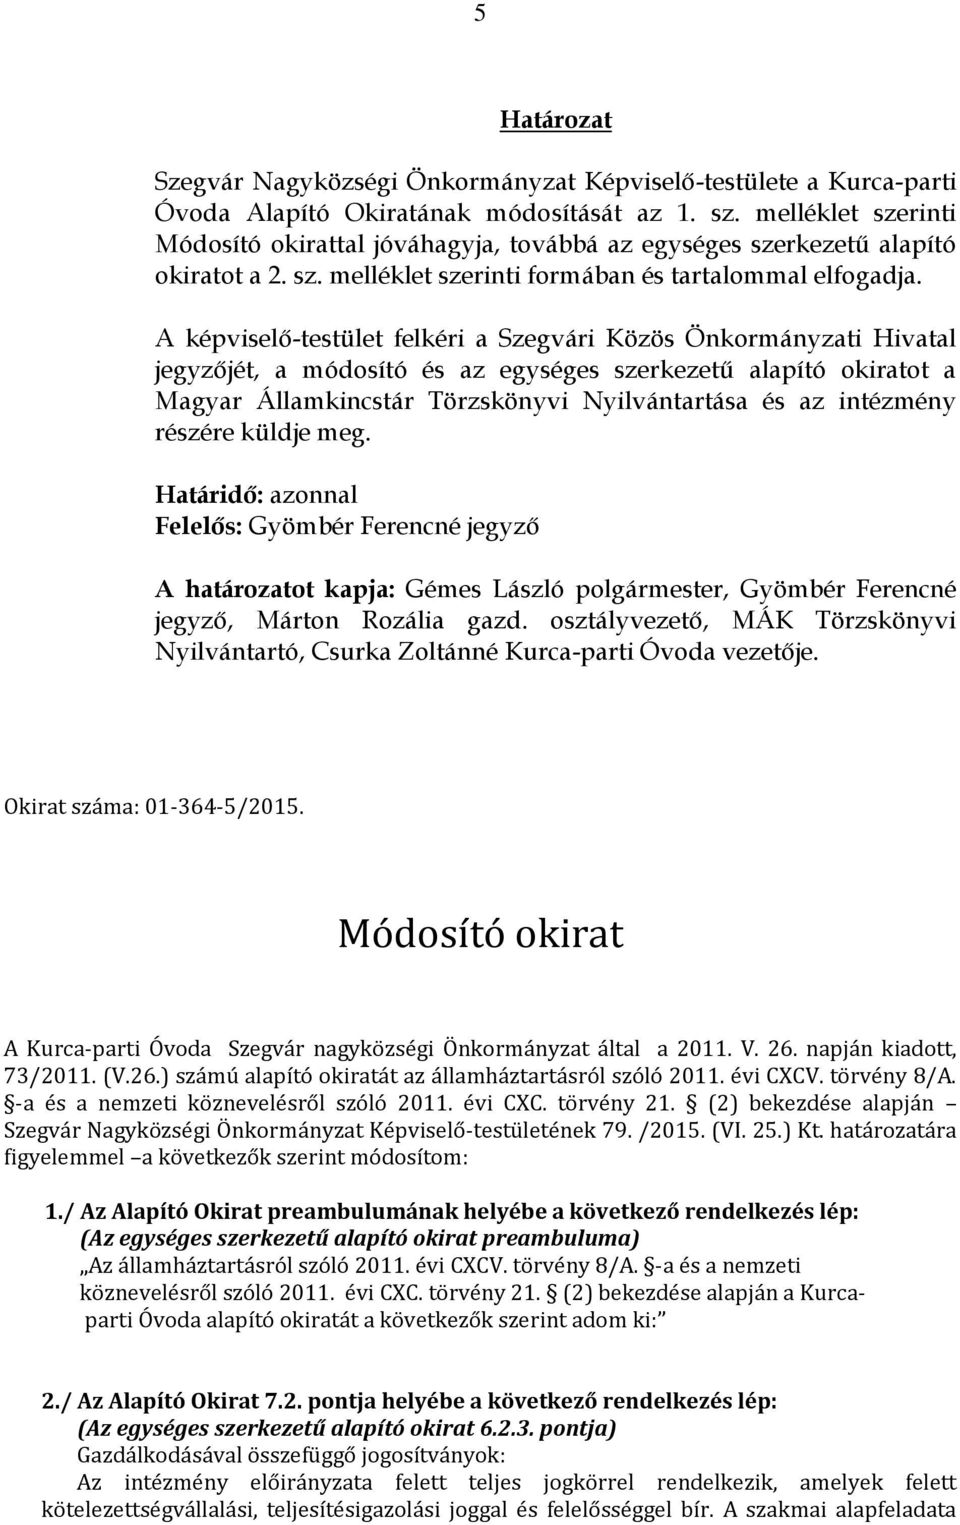 A képviselő-testület felkéri a Szegvári Közös Önkormányzati Hivatal jegyzőjét, a módosító és az egységes szerkezetű alapító okiratot a Magyar Államkincstár Törzskönyvi Nyilvántartása és az intézmény